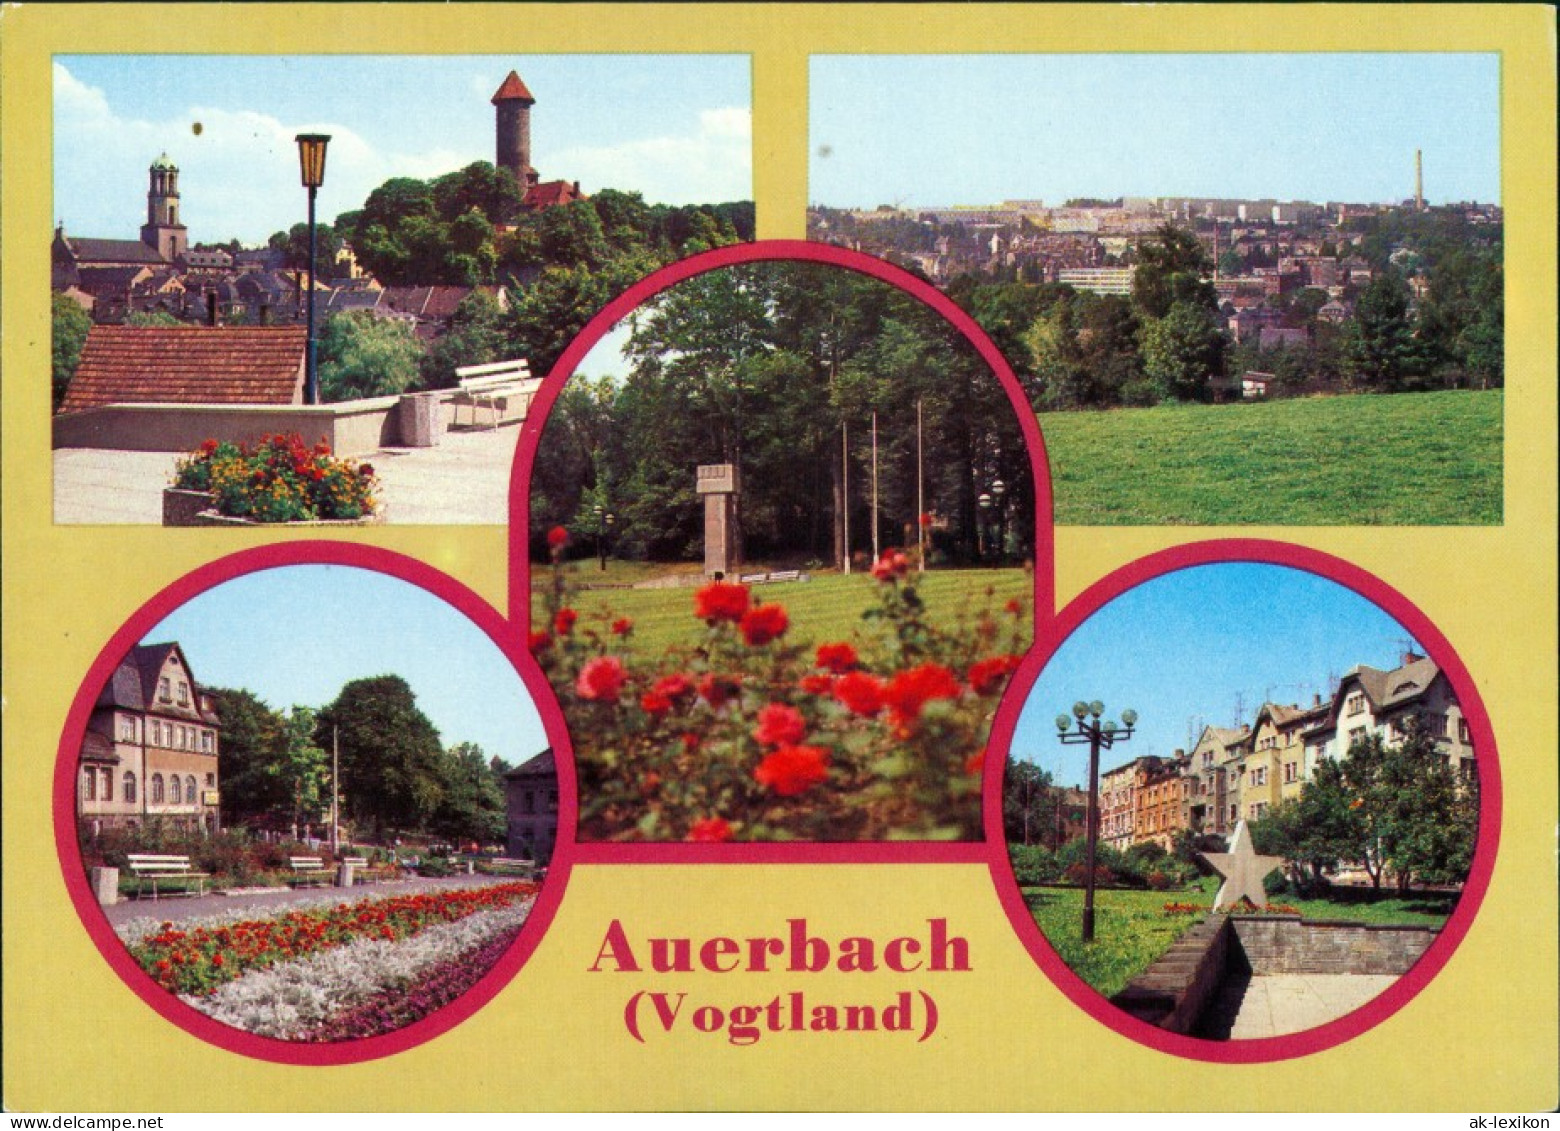 Auerbach (Vogtland) Goethepark, Überrsicht, Philipp-Müller-Platz,  Platz  1984 - Auerbach (Vogtland)